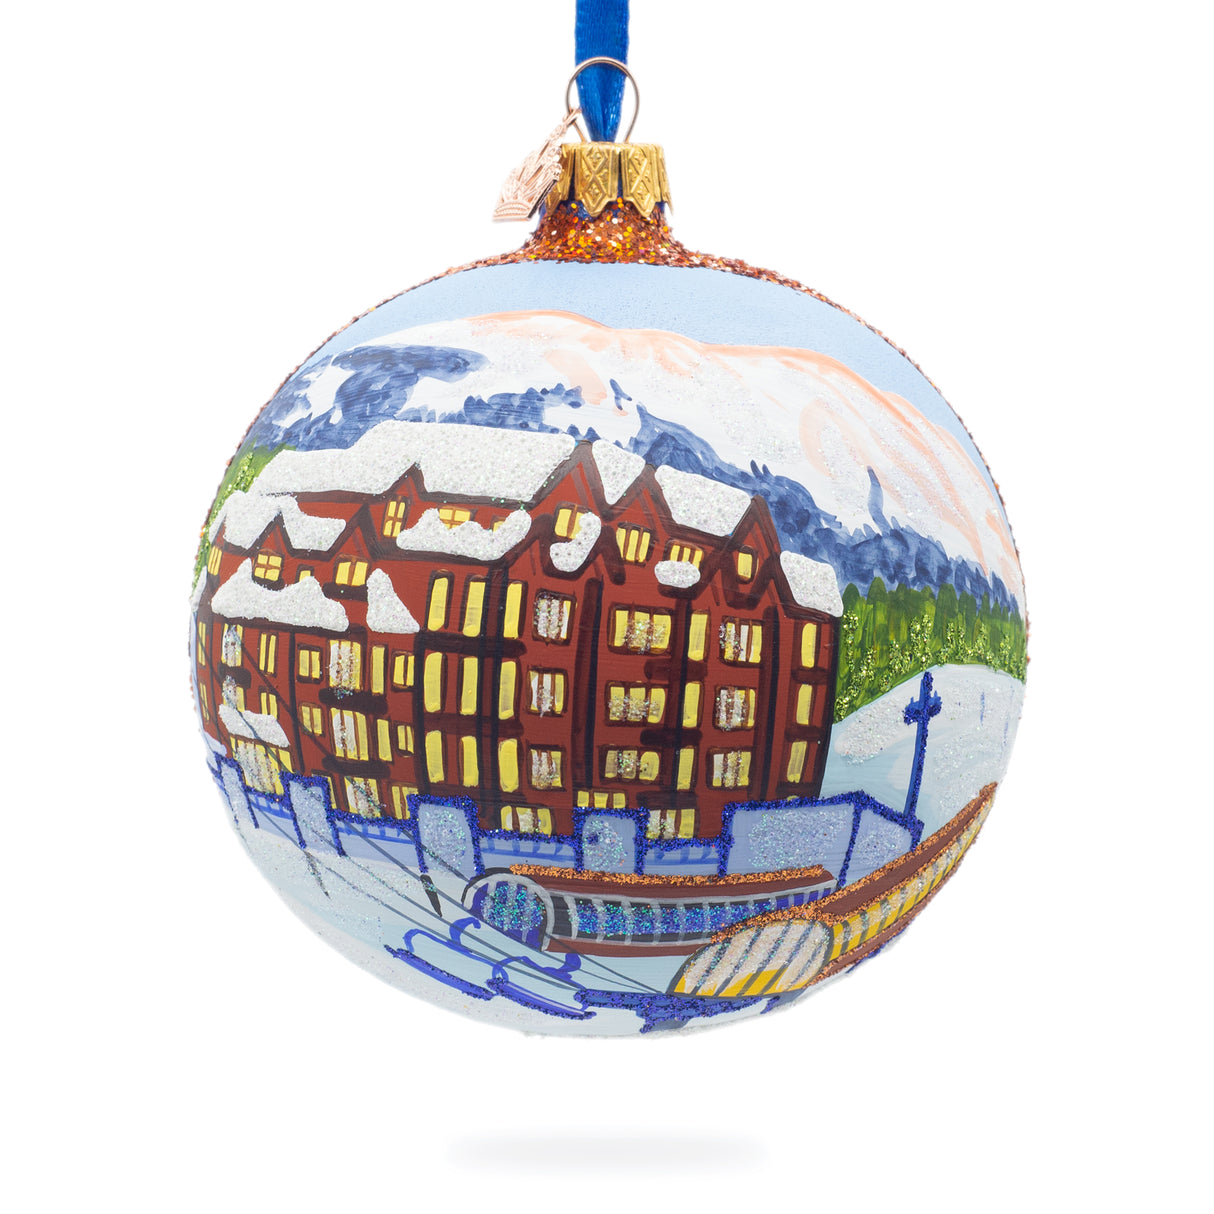 Breckenridge Ski Resort, Colorado, USA Glass Ball Christmas Ornament 4 Inches in Multi color, Round shape